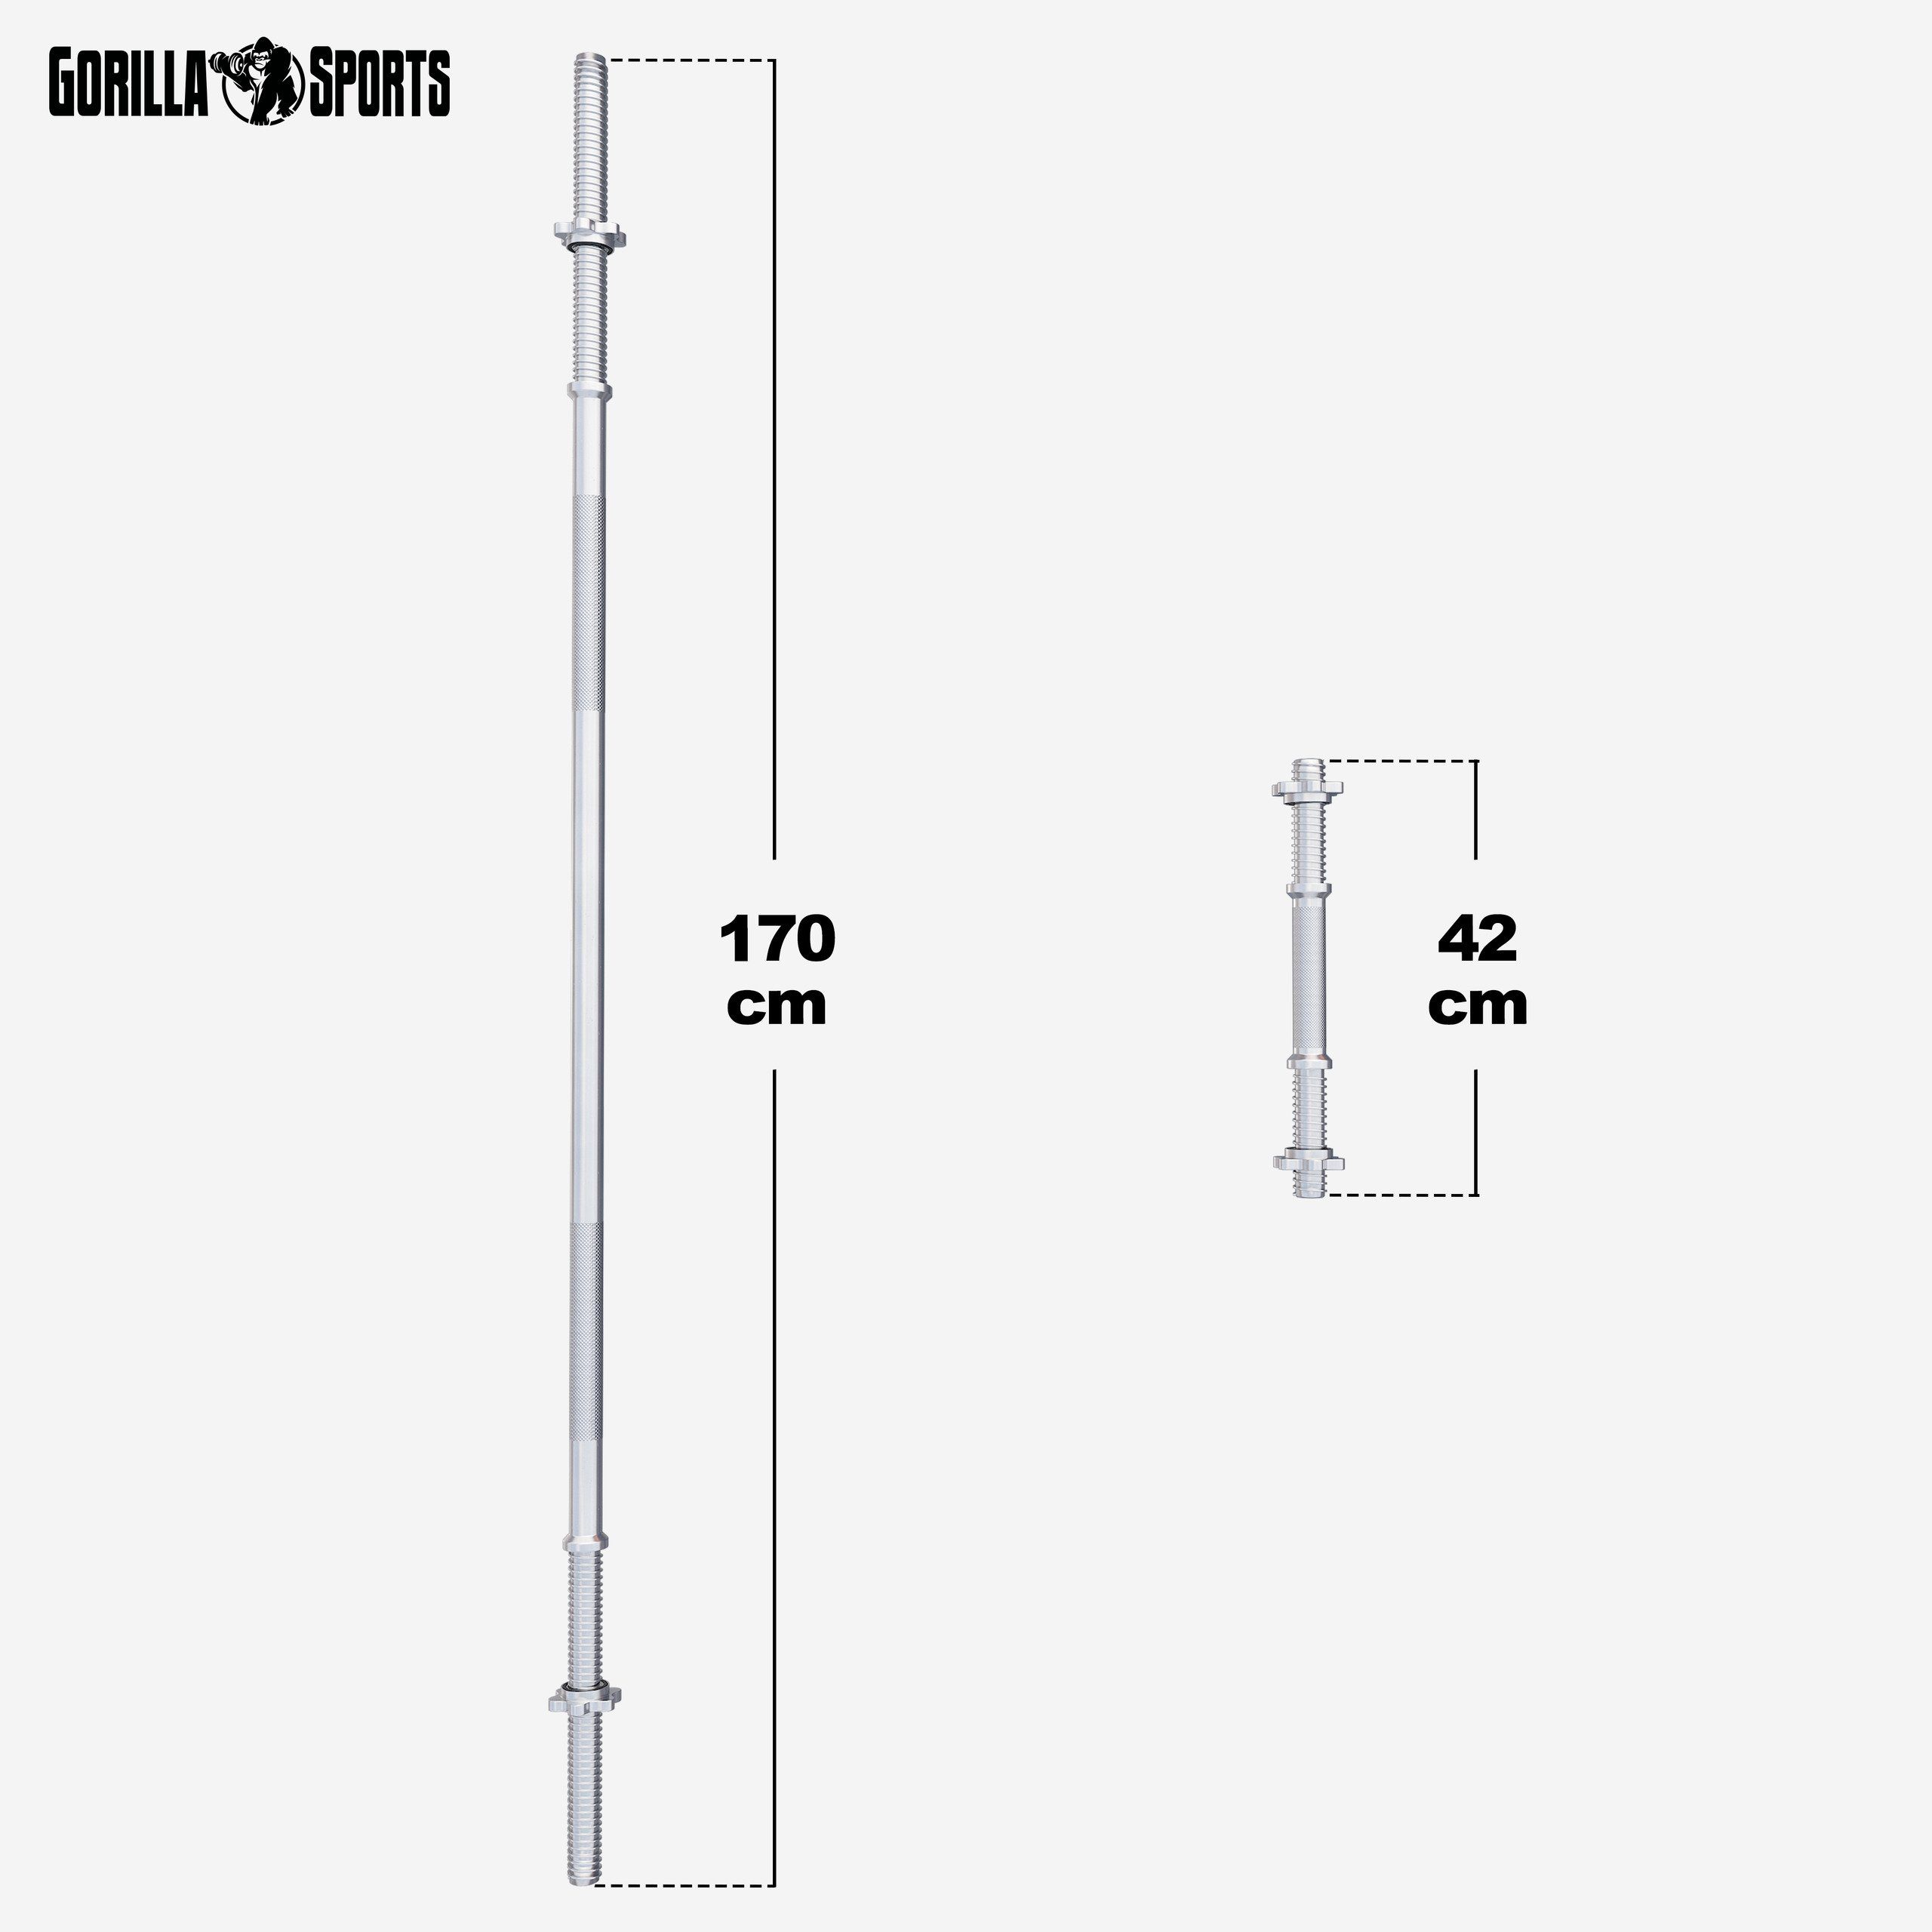 GORILLA SPORTS 2x 6 Langhantelstange, Hantel-Set Sternverschlüssen 100KG mit 170cm Kurzhantelstangen